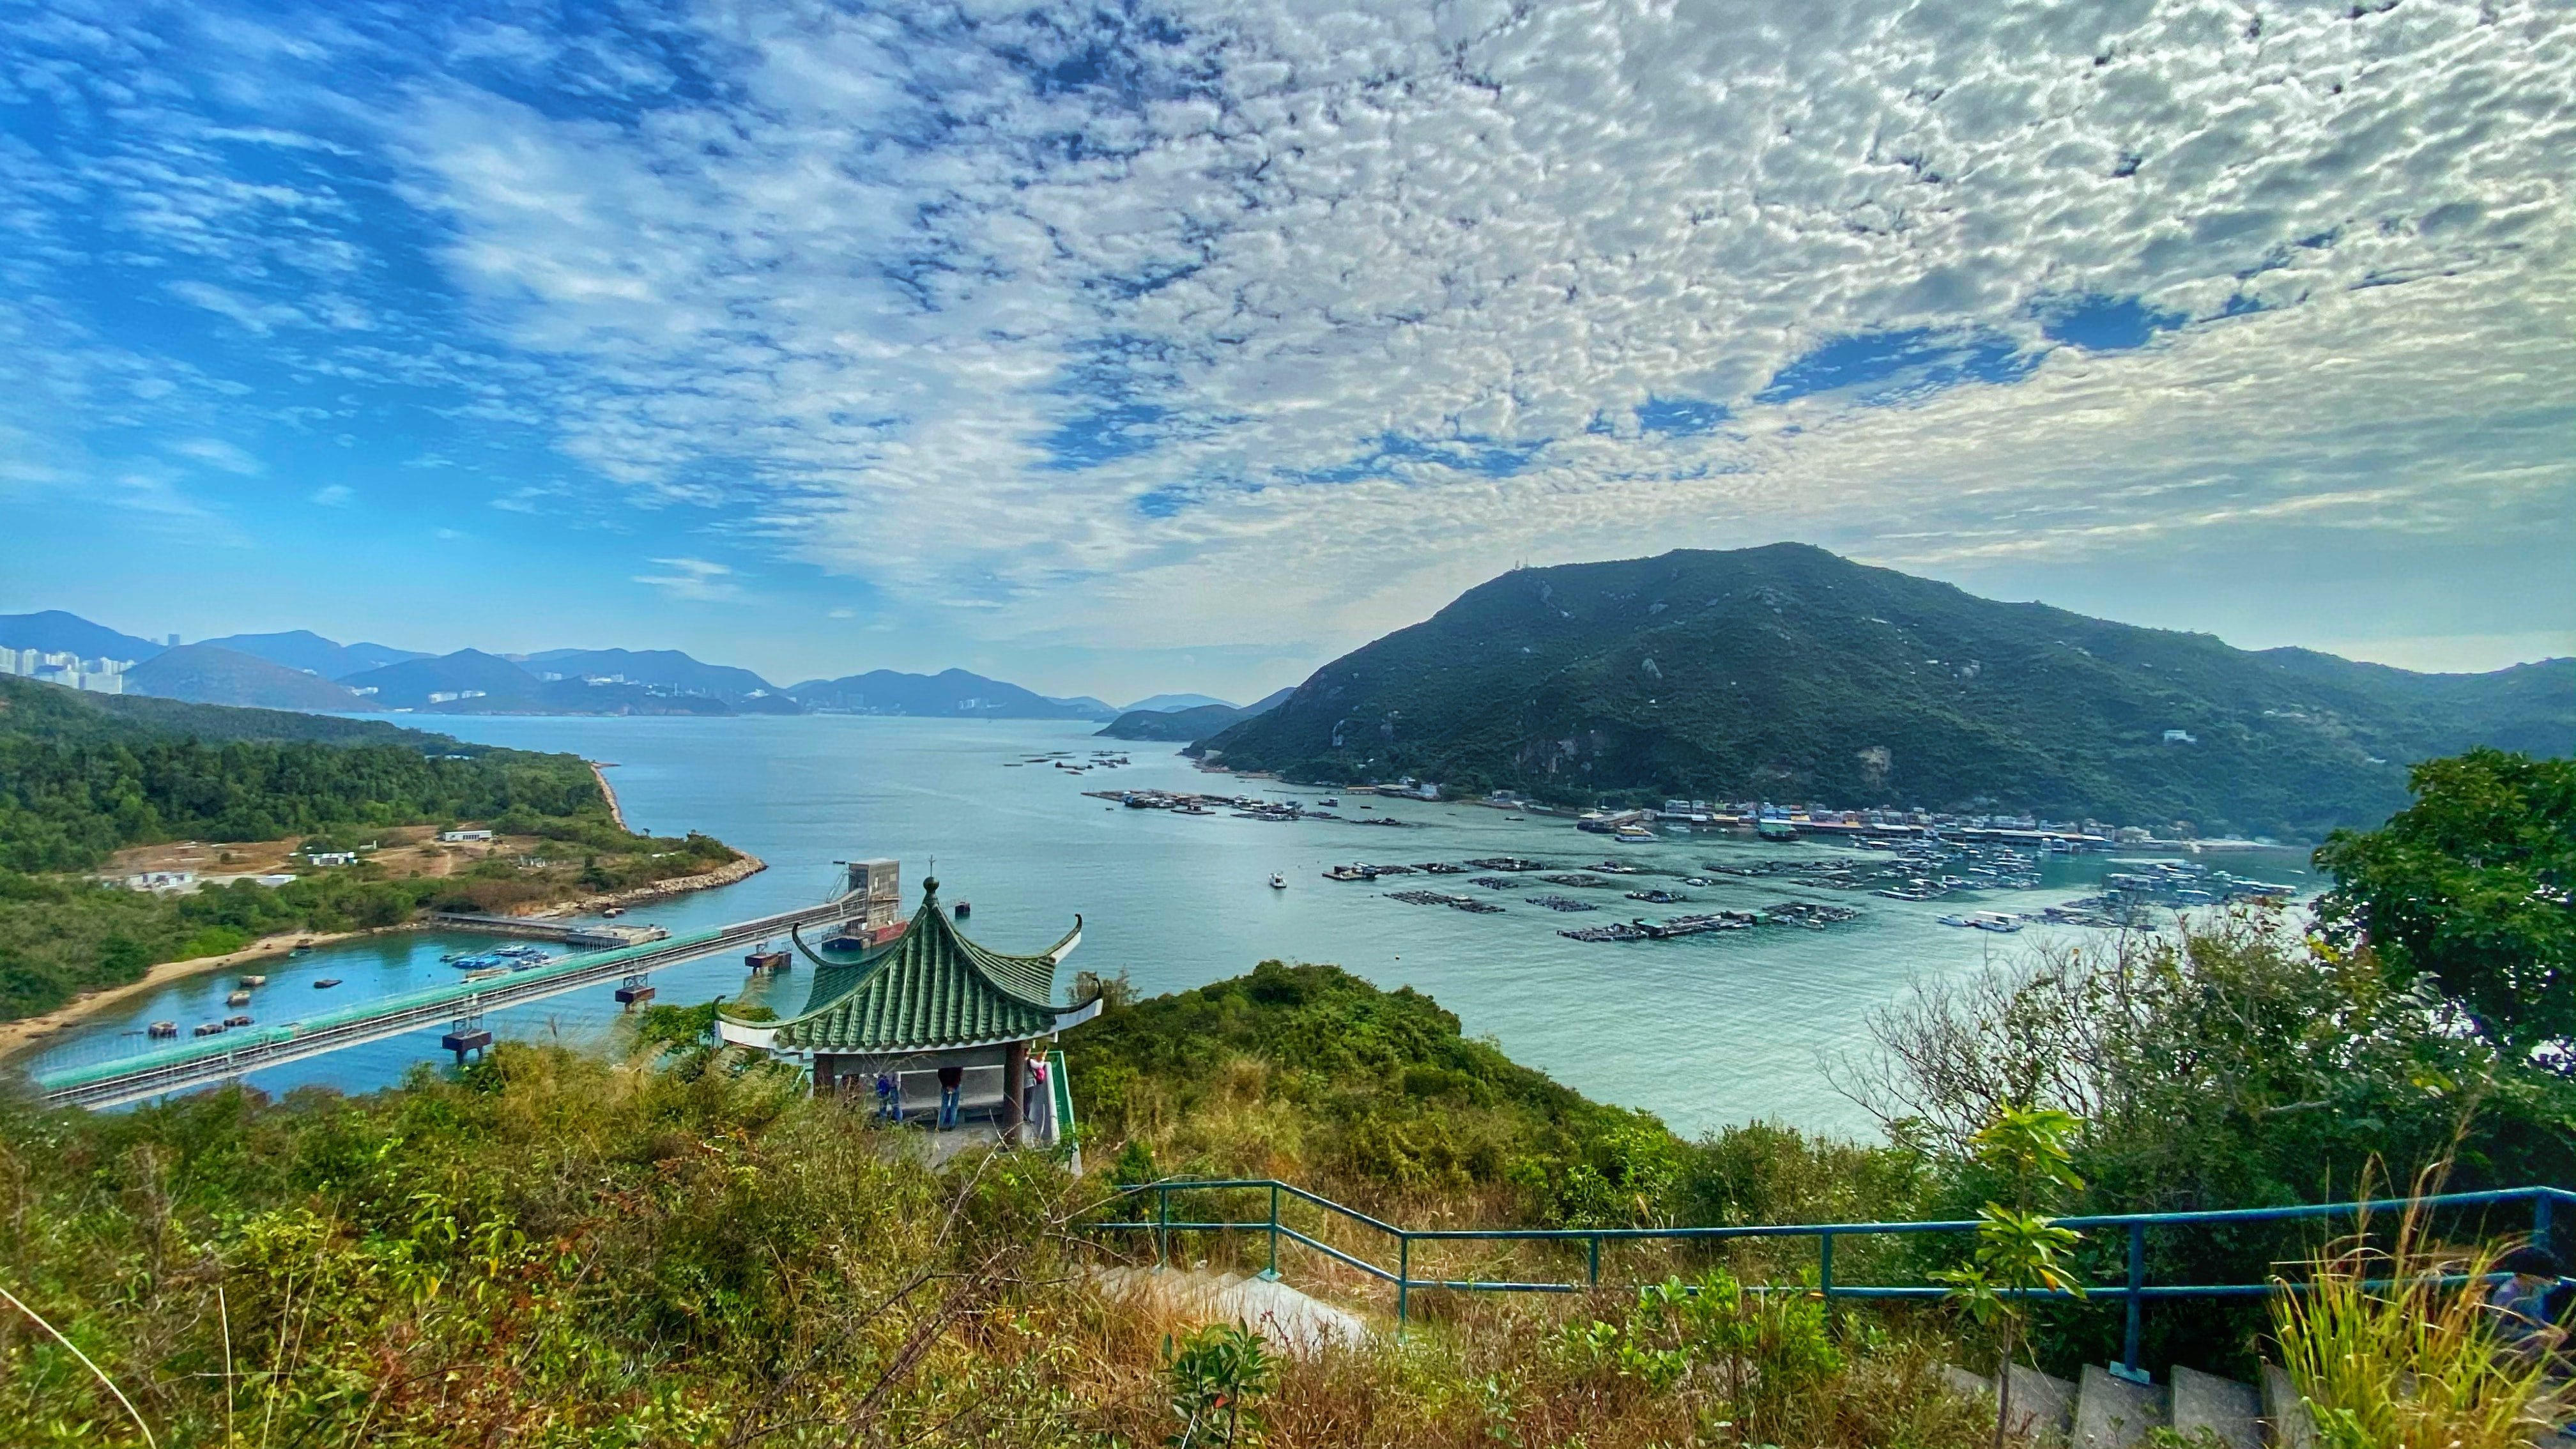 Hong Kong Lamma Island